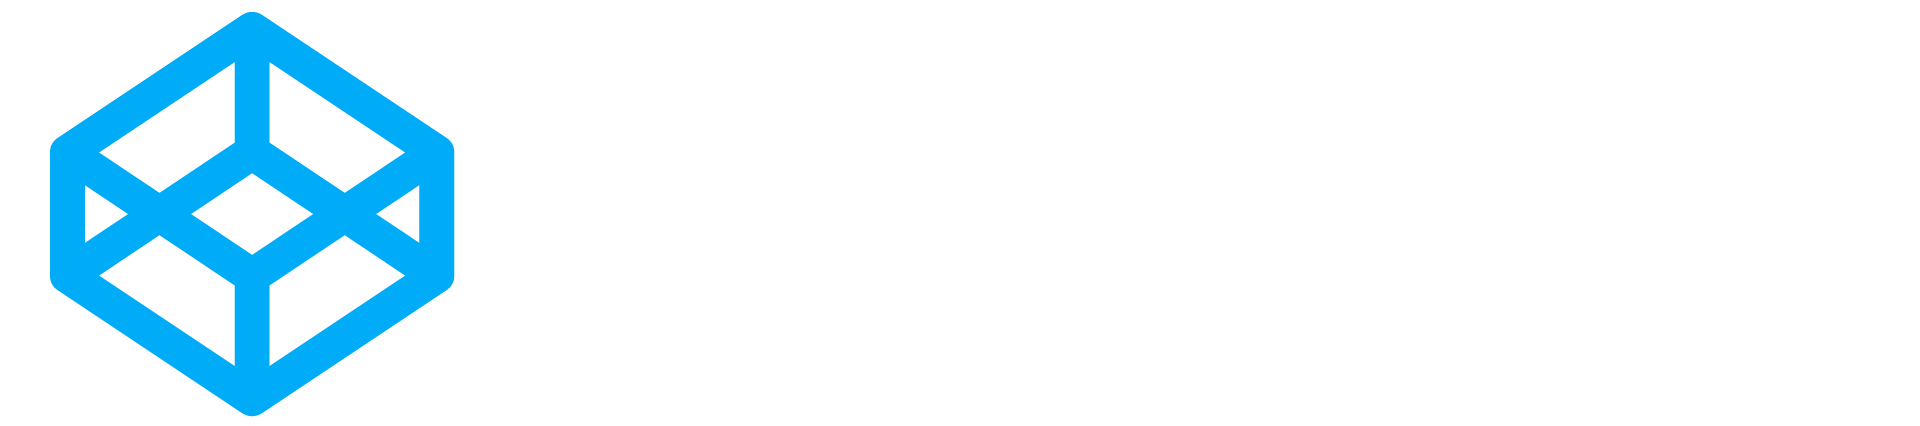 cyraco logo white